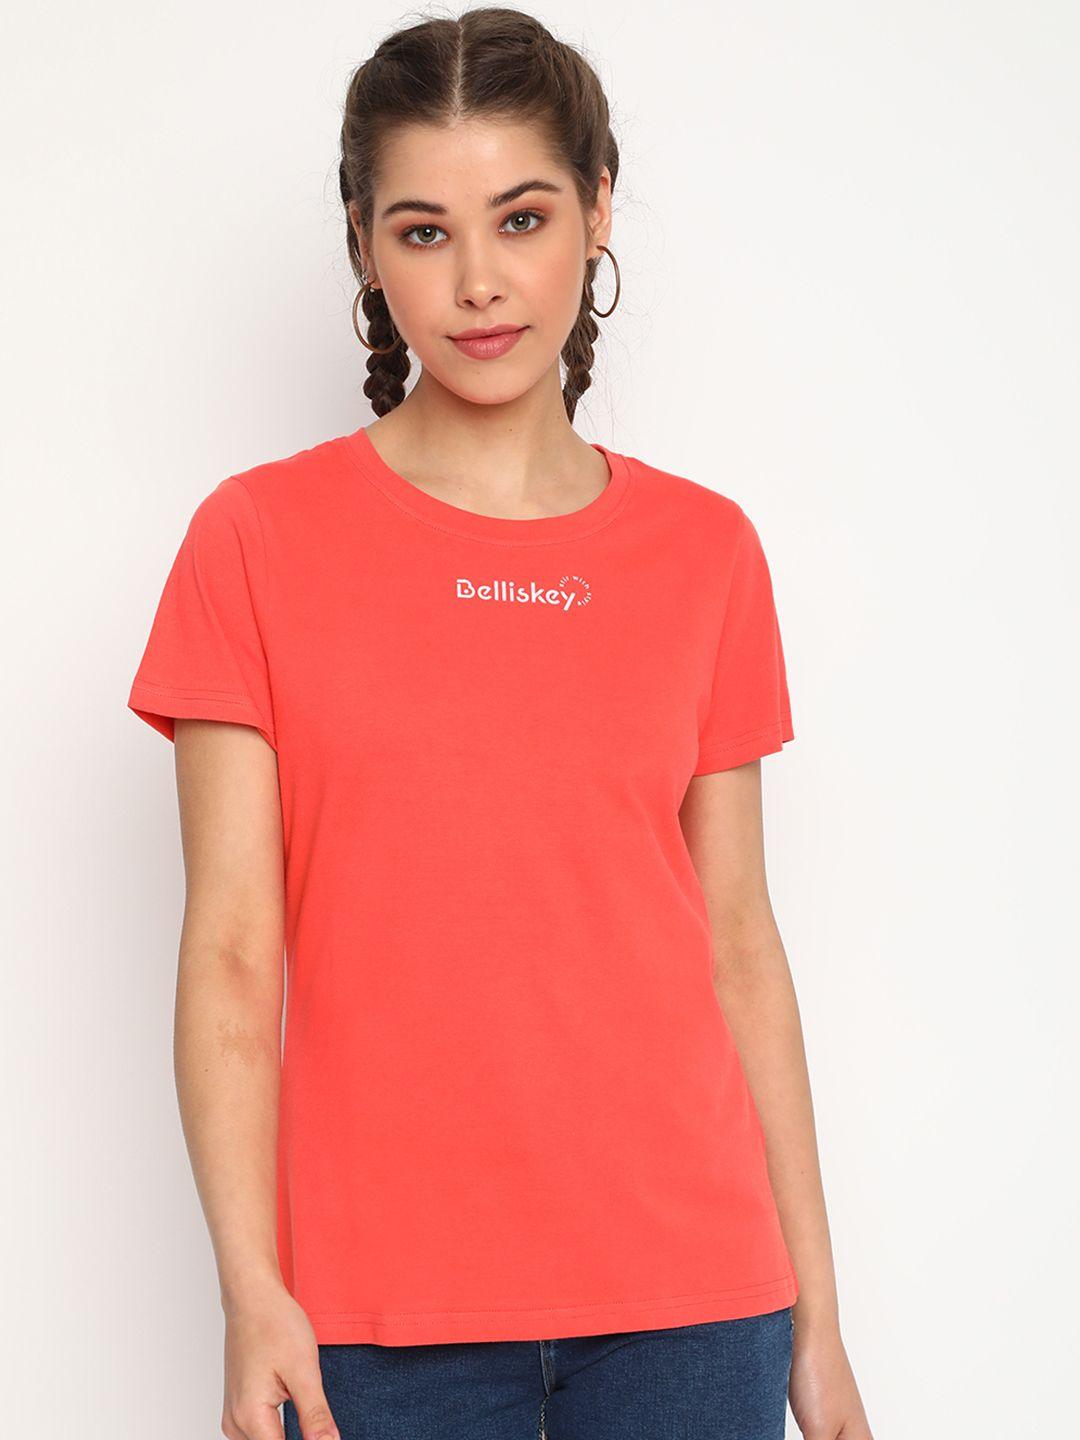 belliskey women orange brand logo printed t-shirt